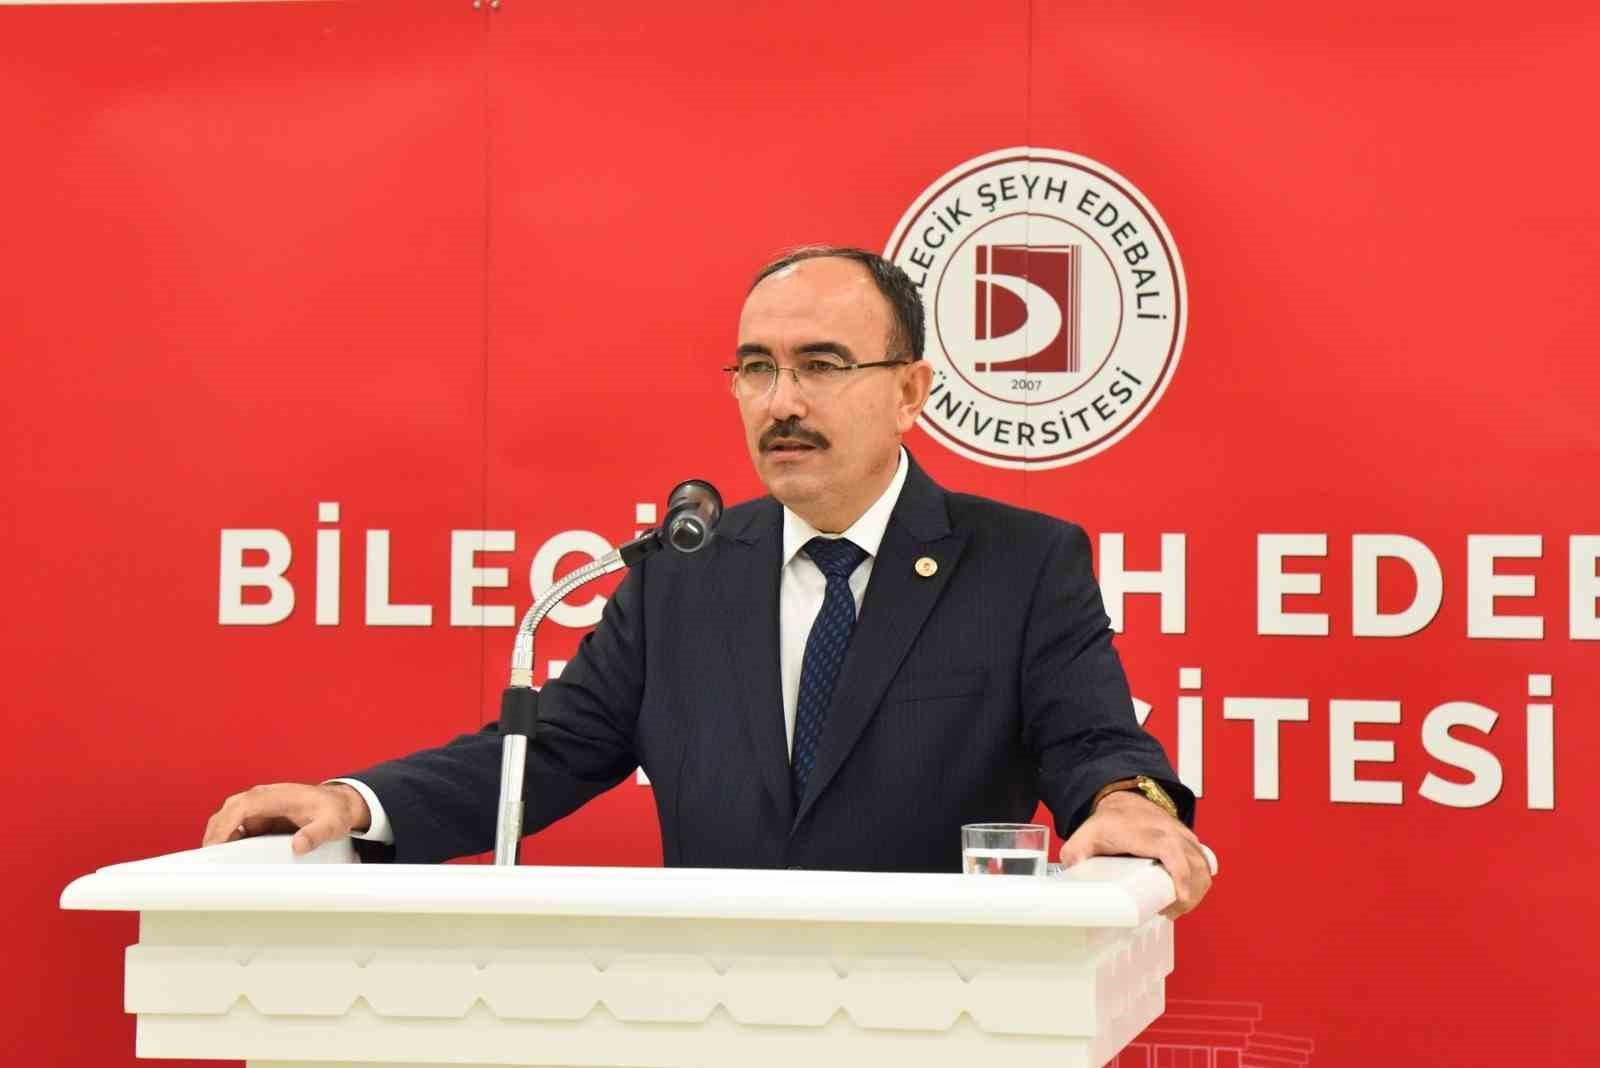 Prof. Dr. Azmi Özcan’ın adı kütüphaneye verildi